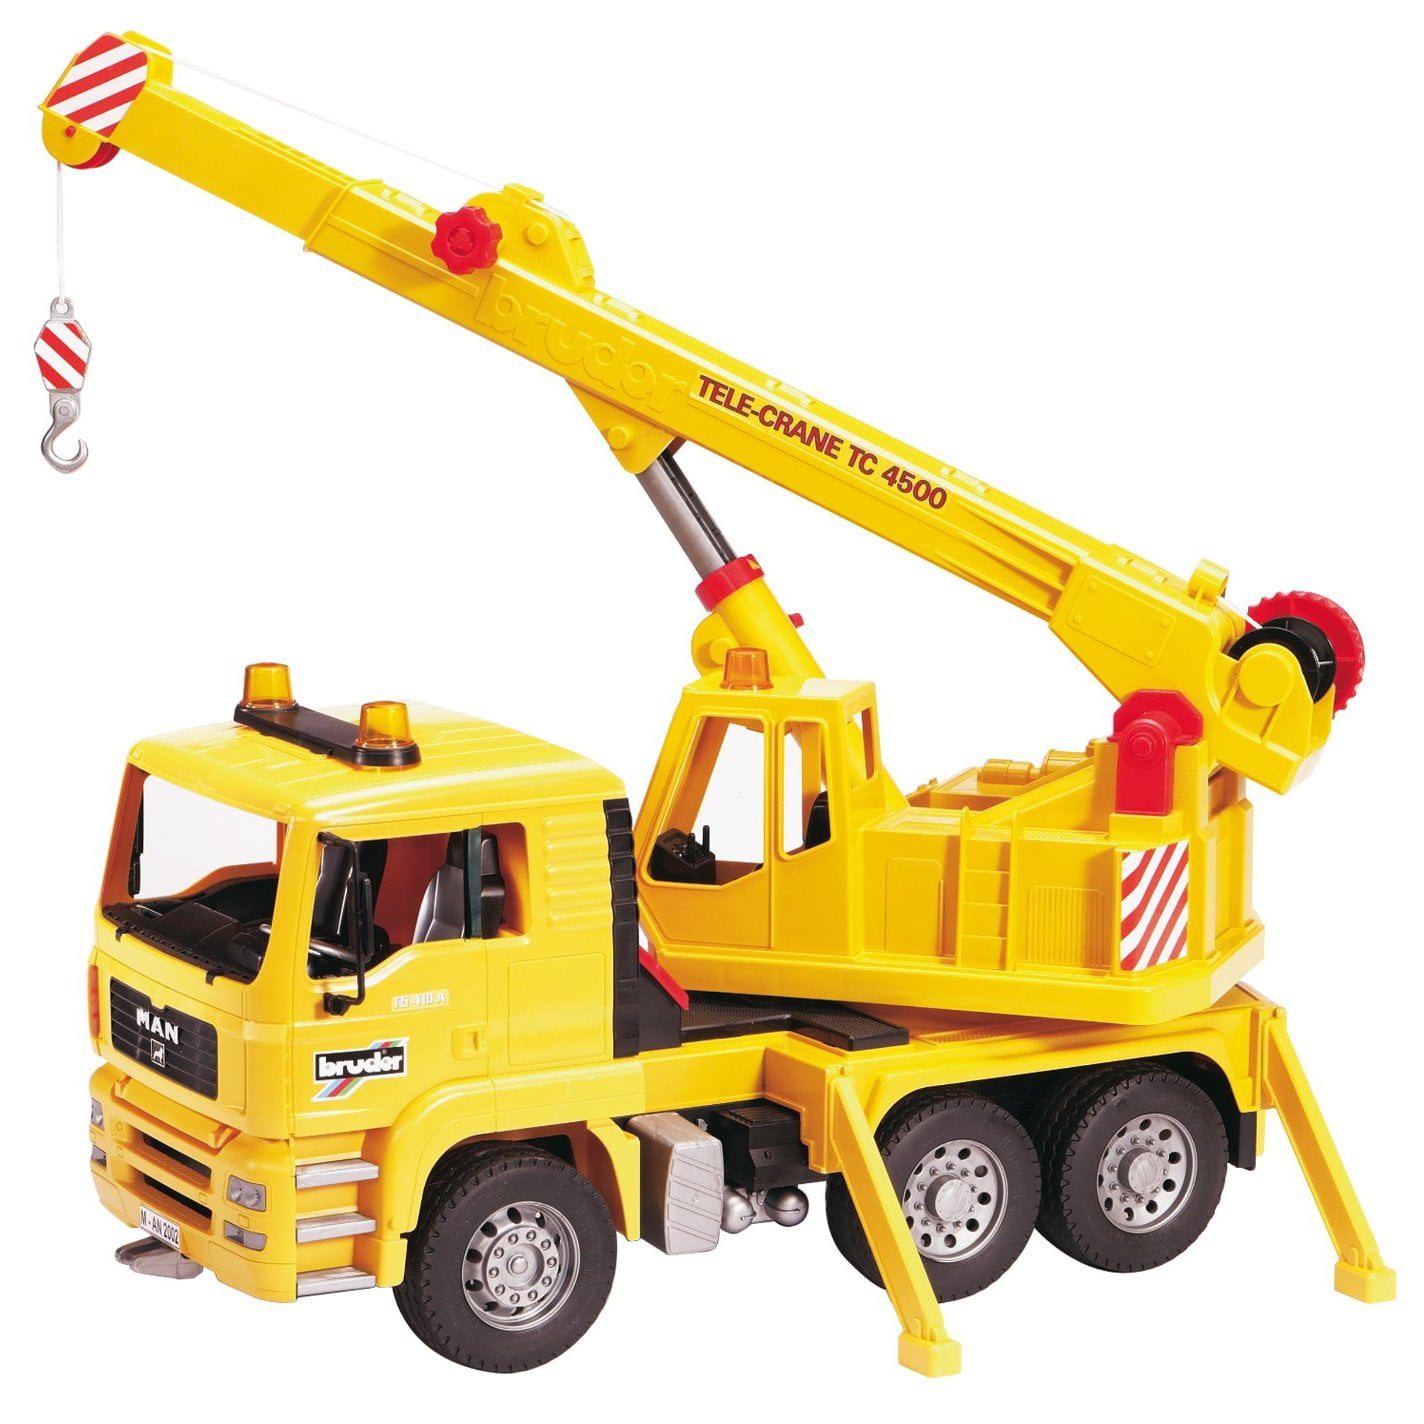 crane truck toy walmart